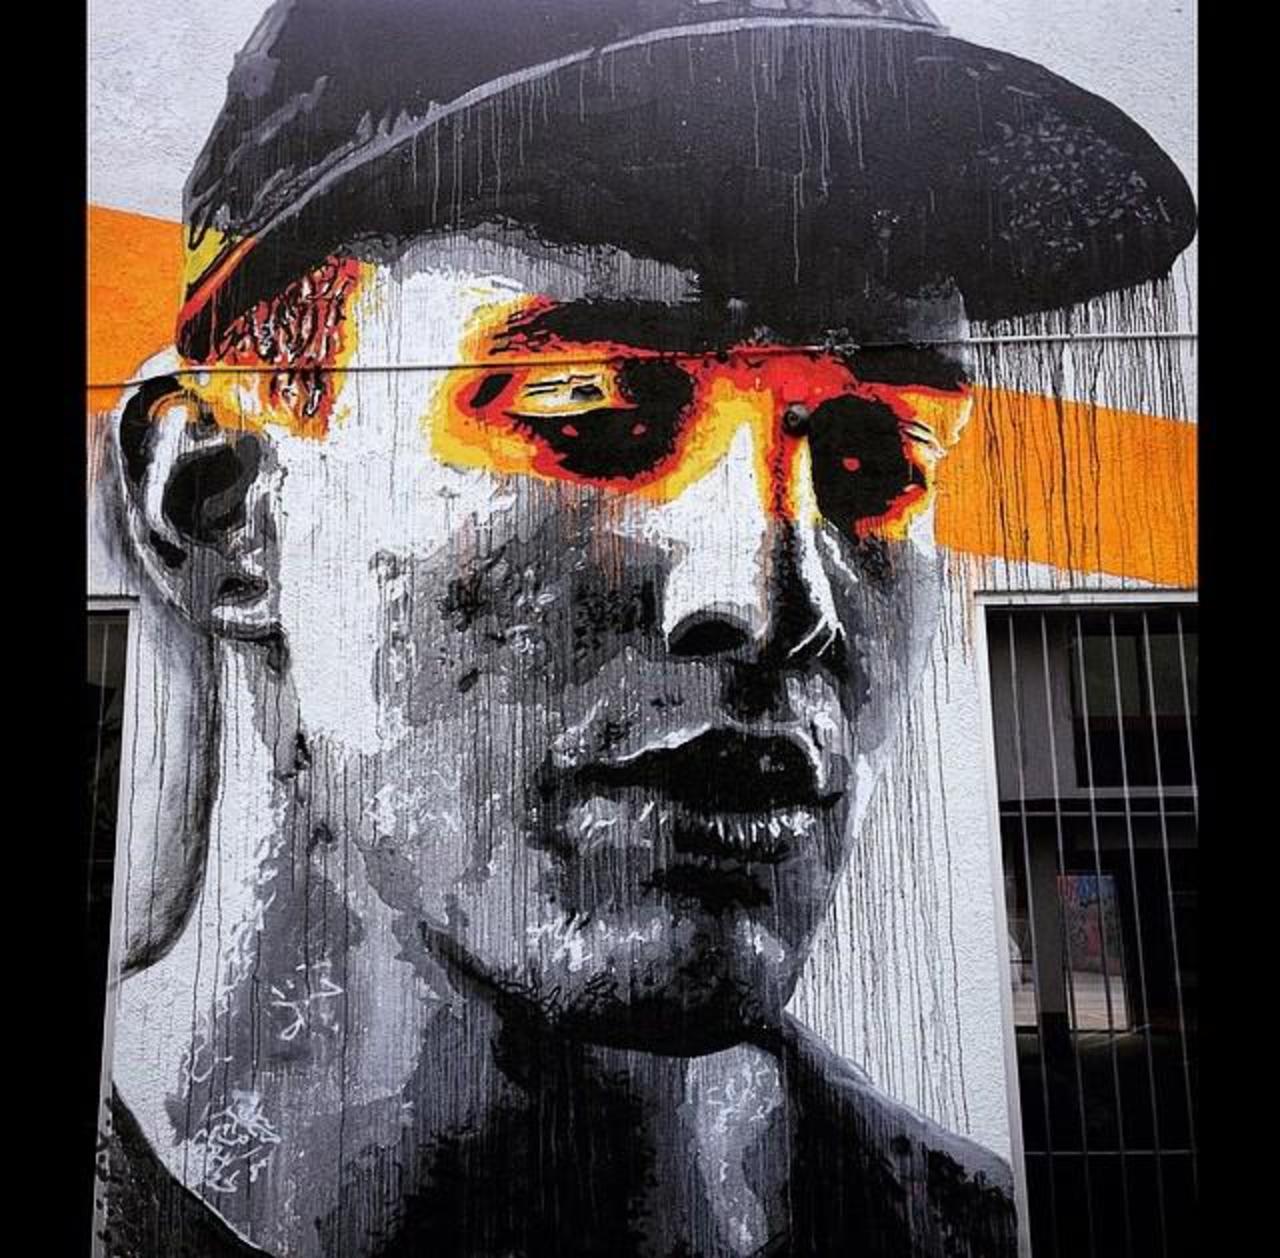 Artist Nils Westergard Street Art portrait in Miami 
#art #graffiti #mural #streetart http://t.co/YXXJZdjIfa (via @GoogleStreetArt)